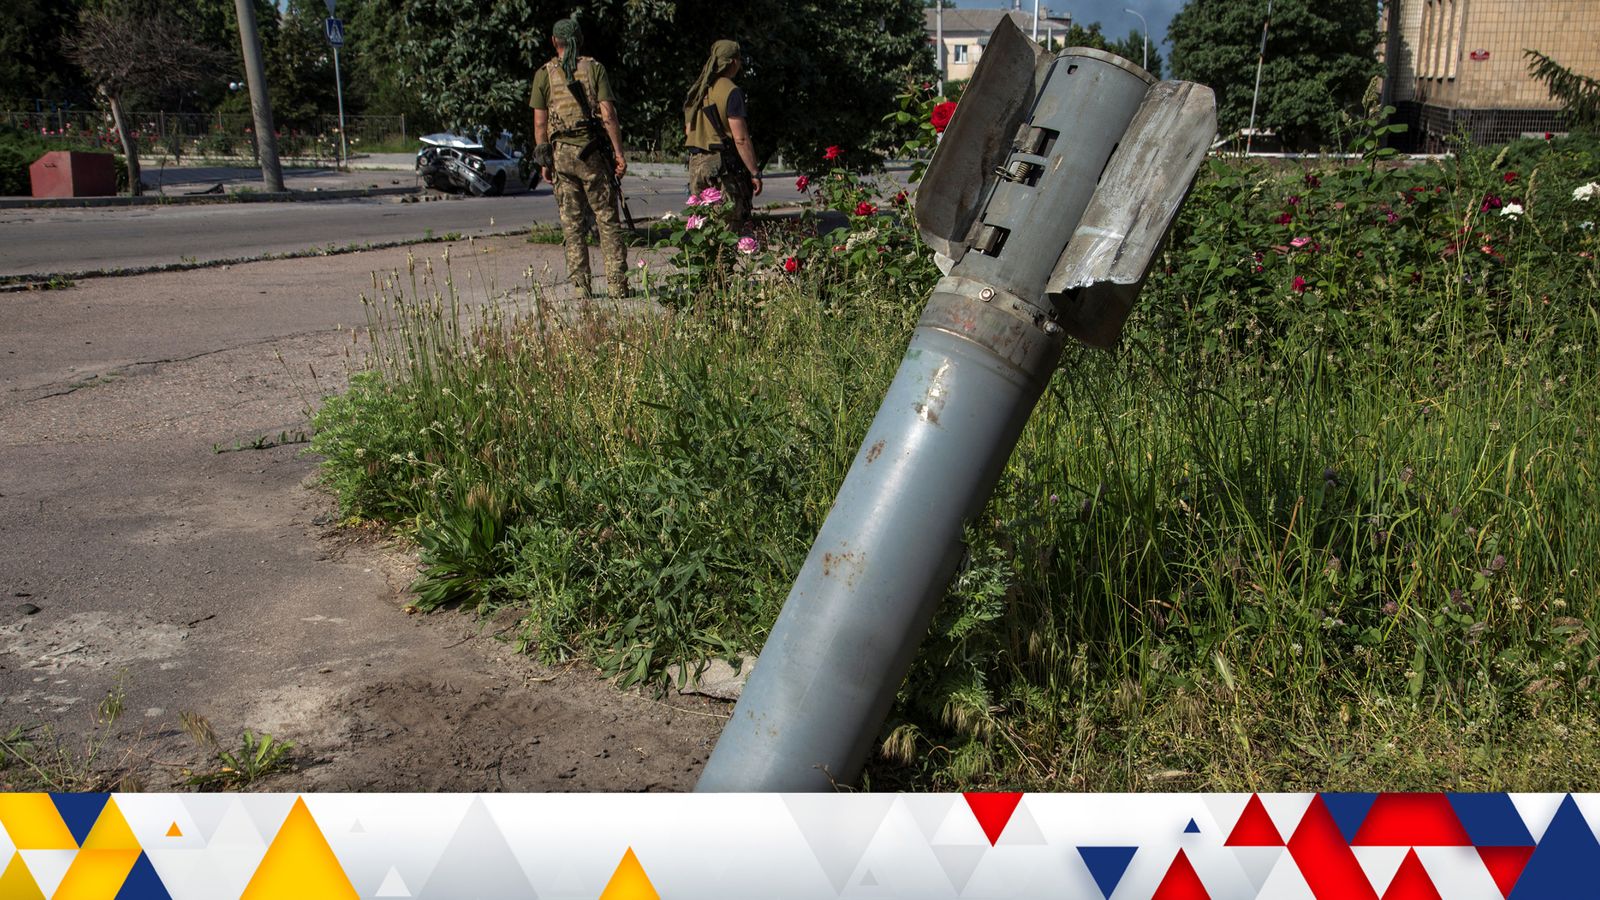 Notícias da Ucrânia ao vivo: Moscou alerta para reação ao aumento de tropas da OTAN na Polônia;  Passaportes russos “serão emitidos em áreas controladas pelo Kremlin em Zaporizhia” |  noticias do mundo